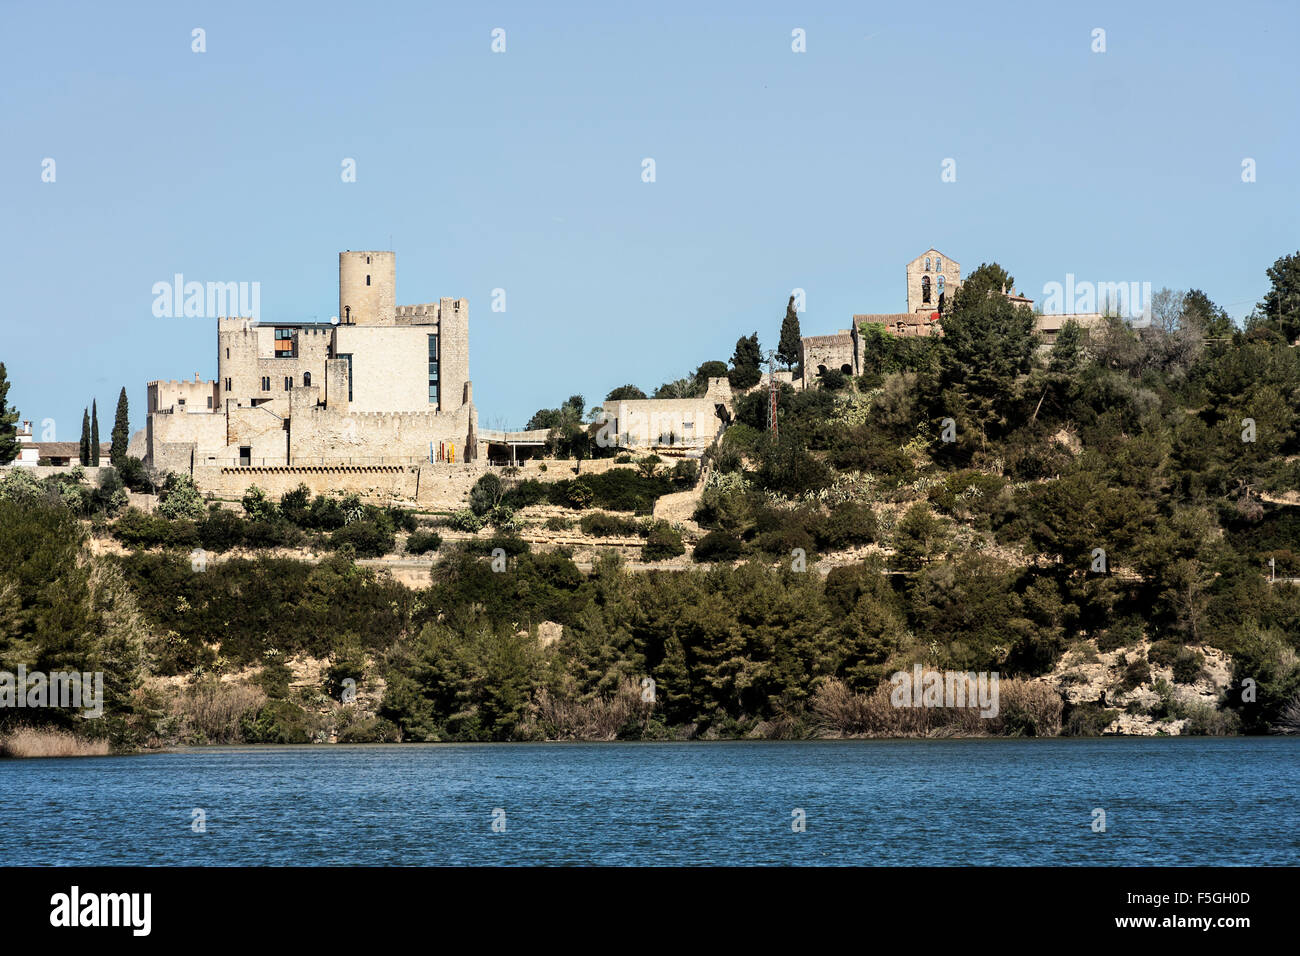 Castellet i la Gornal castle. Stock Photo